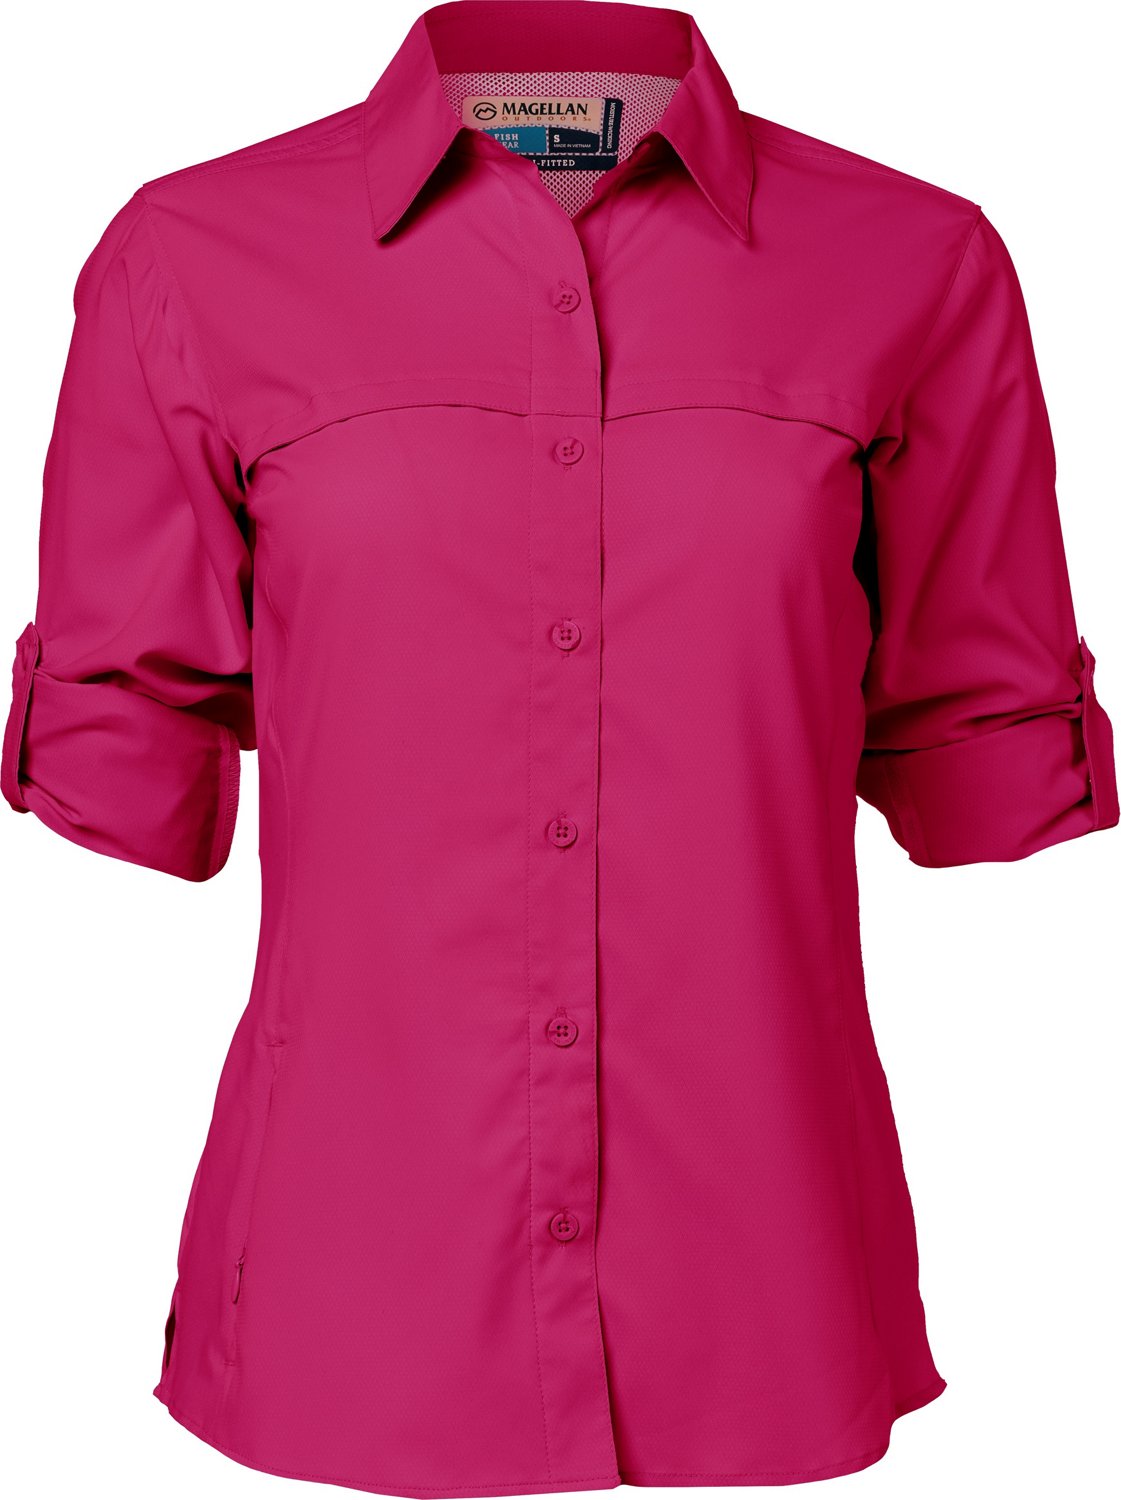 Magellan Womens Long Sleeve Thermal Shirt Large Pink Striped